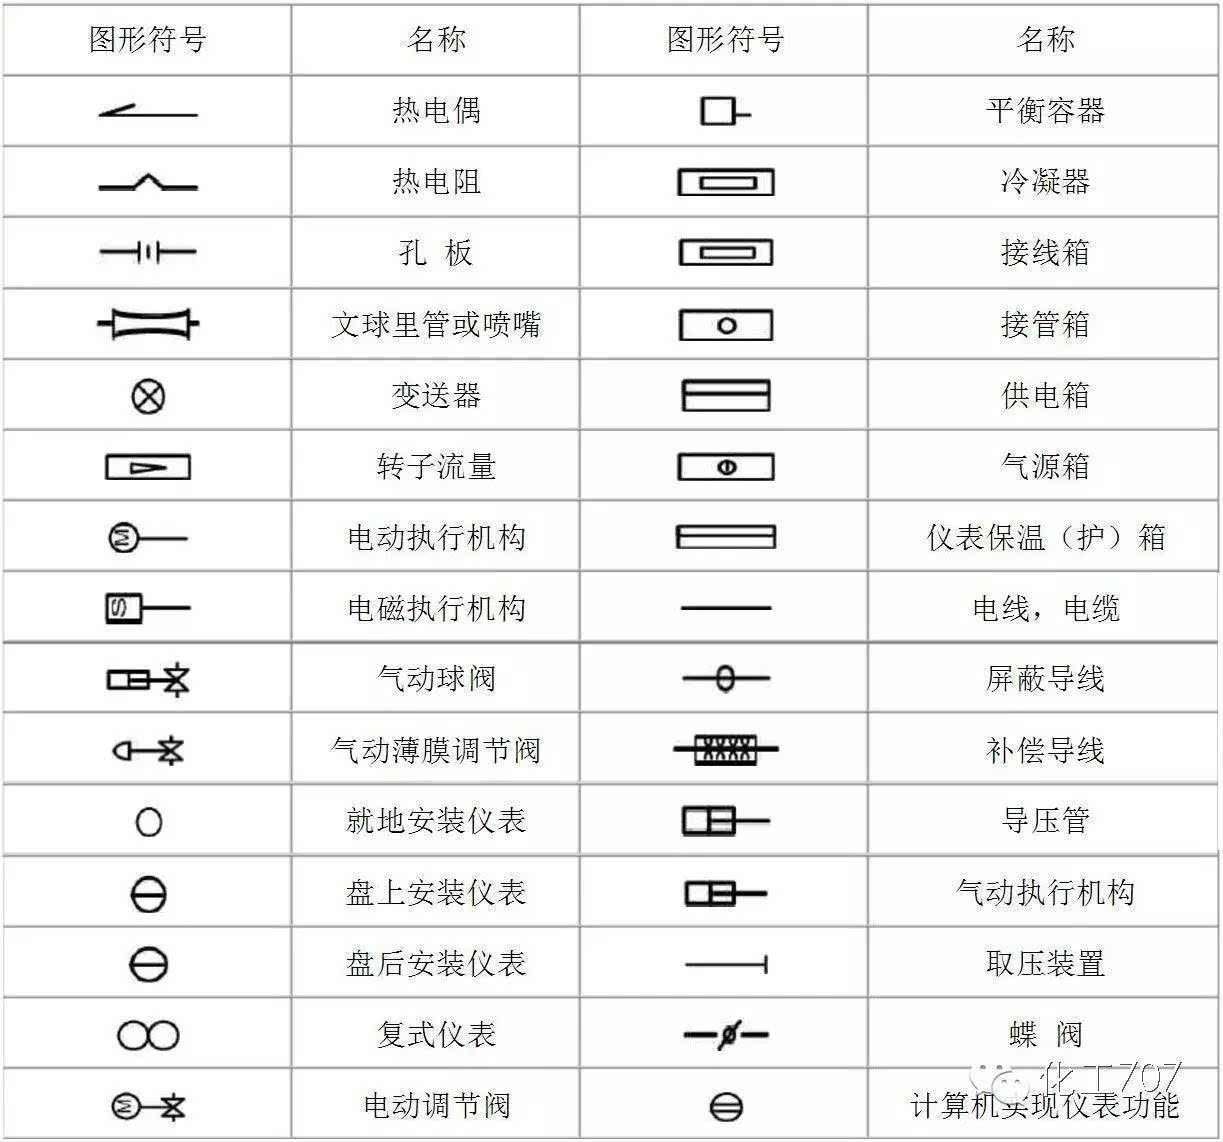 中国文化符号的崛起 中国传统吉祥纹样带给很多惊喜 - AdobeEdu 设计联盟